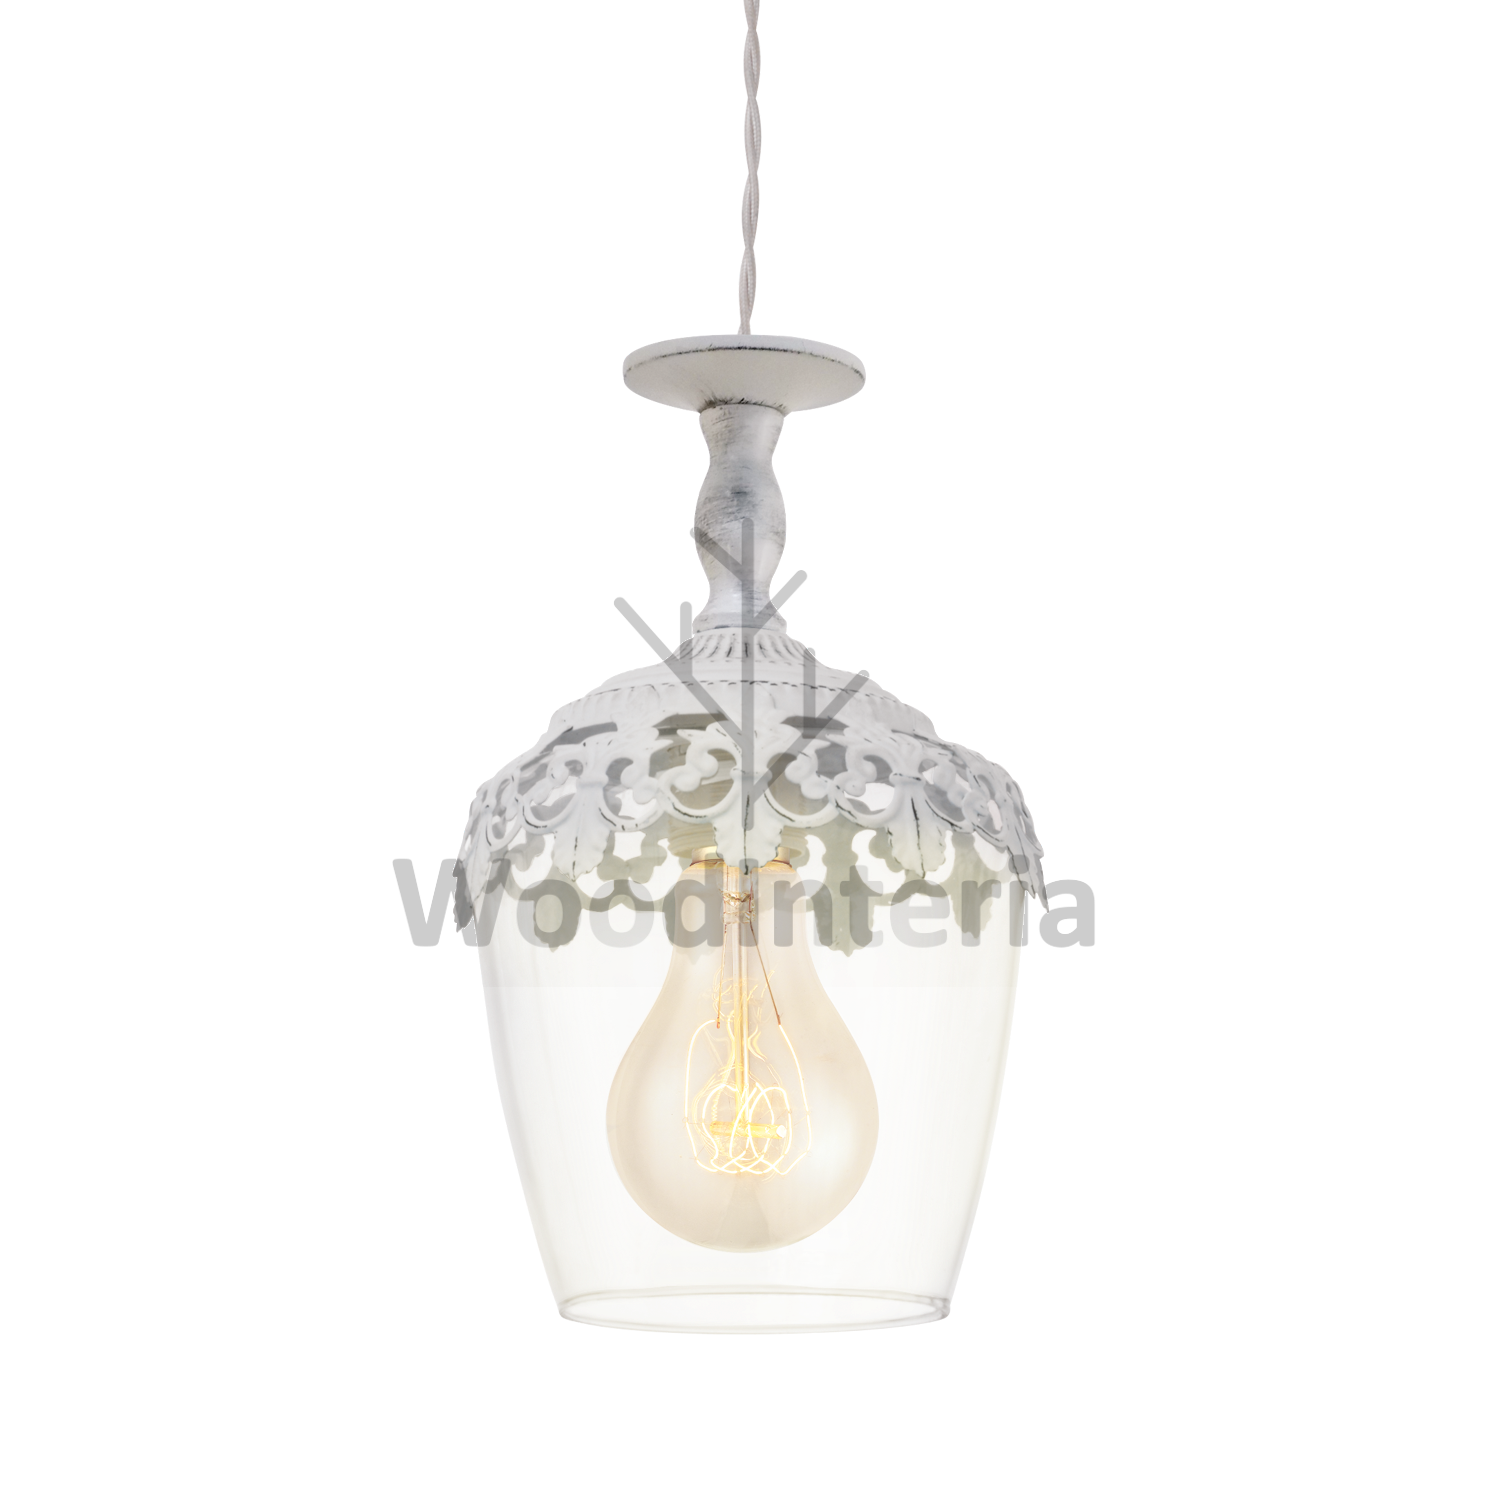 фото подвесной светильник patina chandelier в скандинавском интерьере лофт эко | WoodInteria